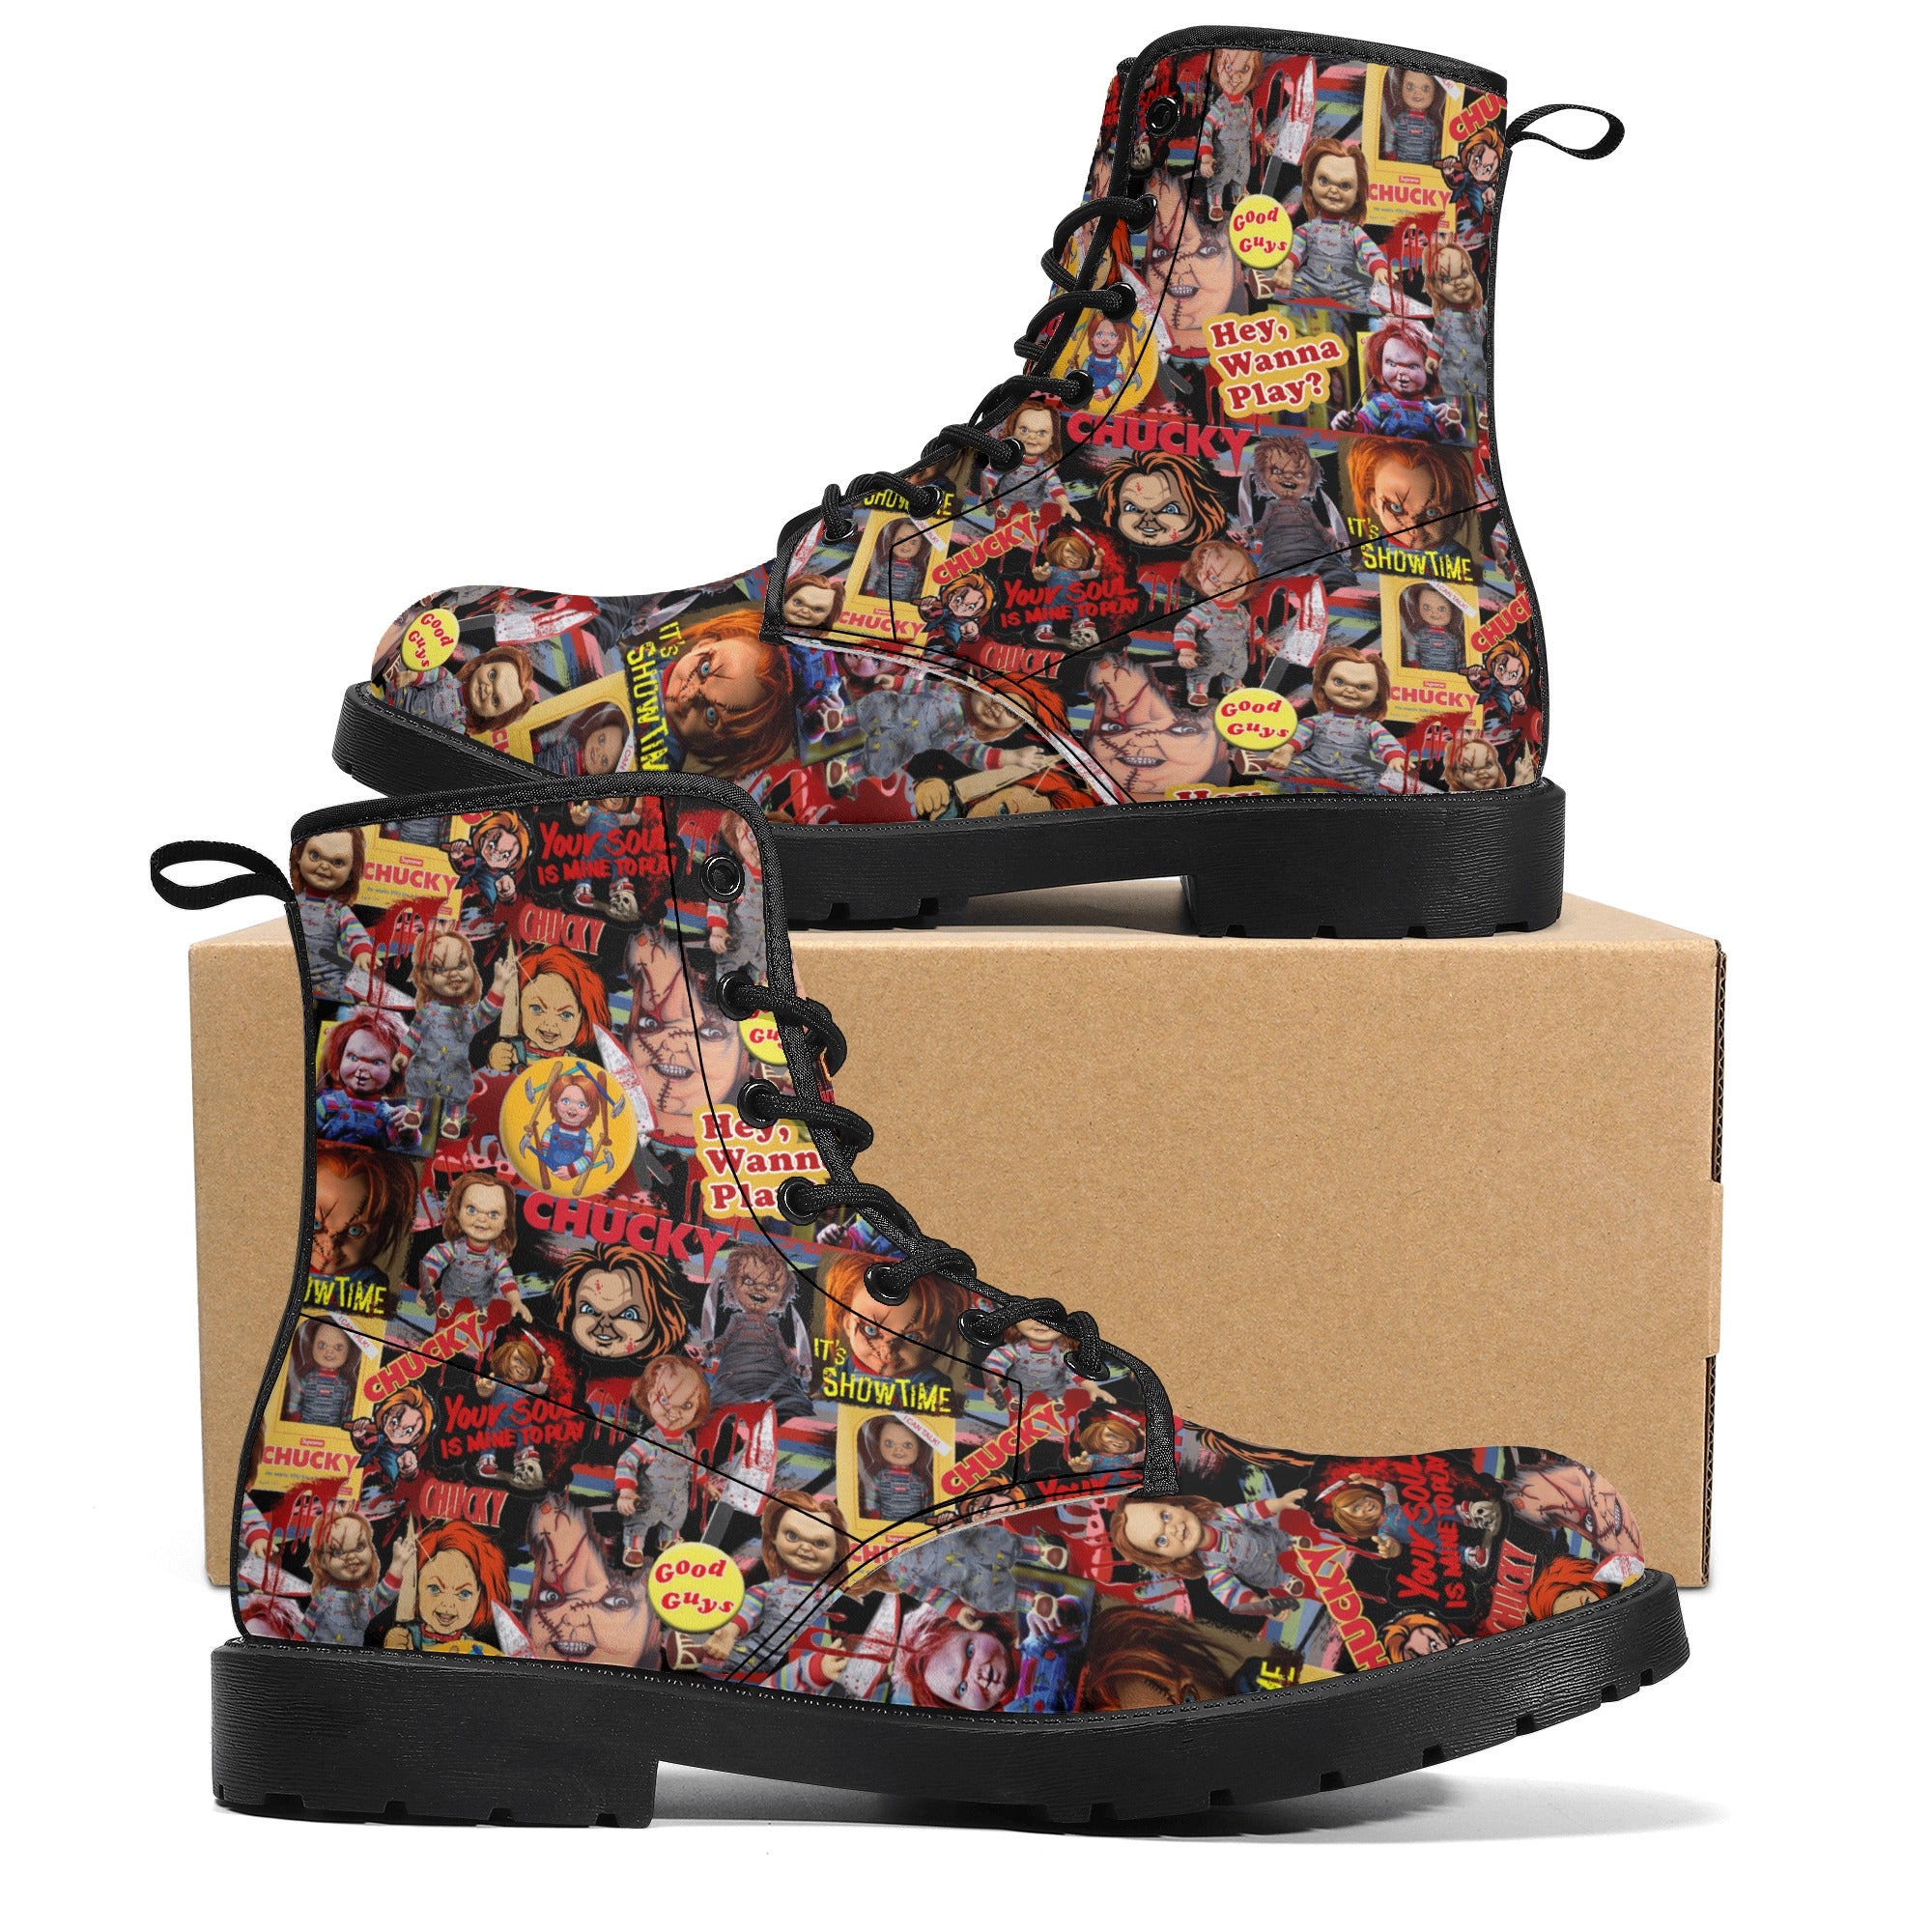 Chucky Wanna PLay Leather Boots spookydoll